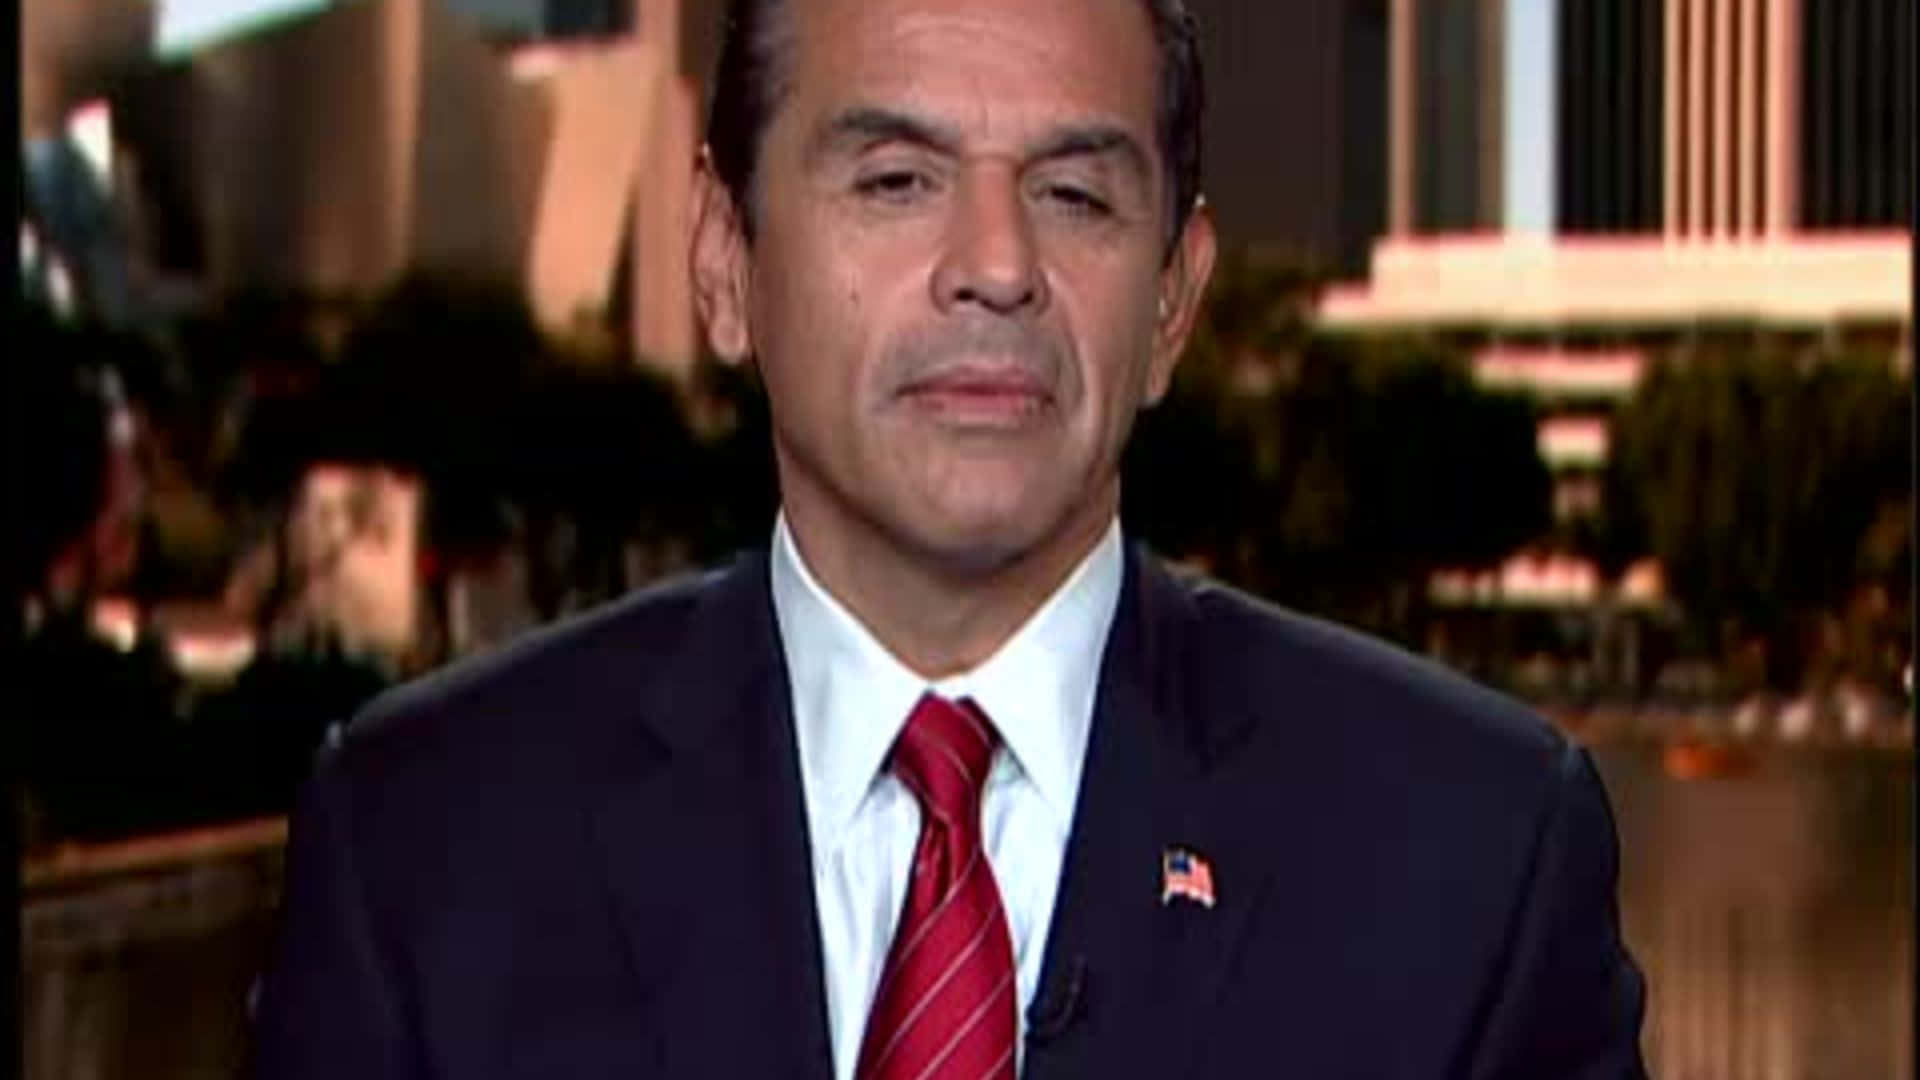 Former mayor of Los Angeles Antonio Villaraigosa wearing a red tie Wallpaper